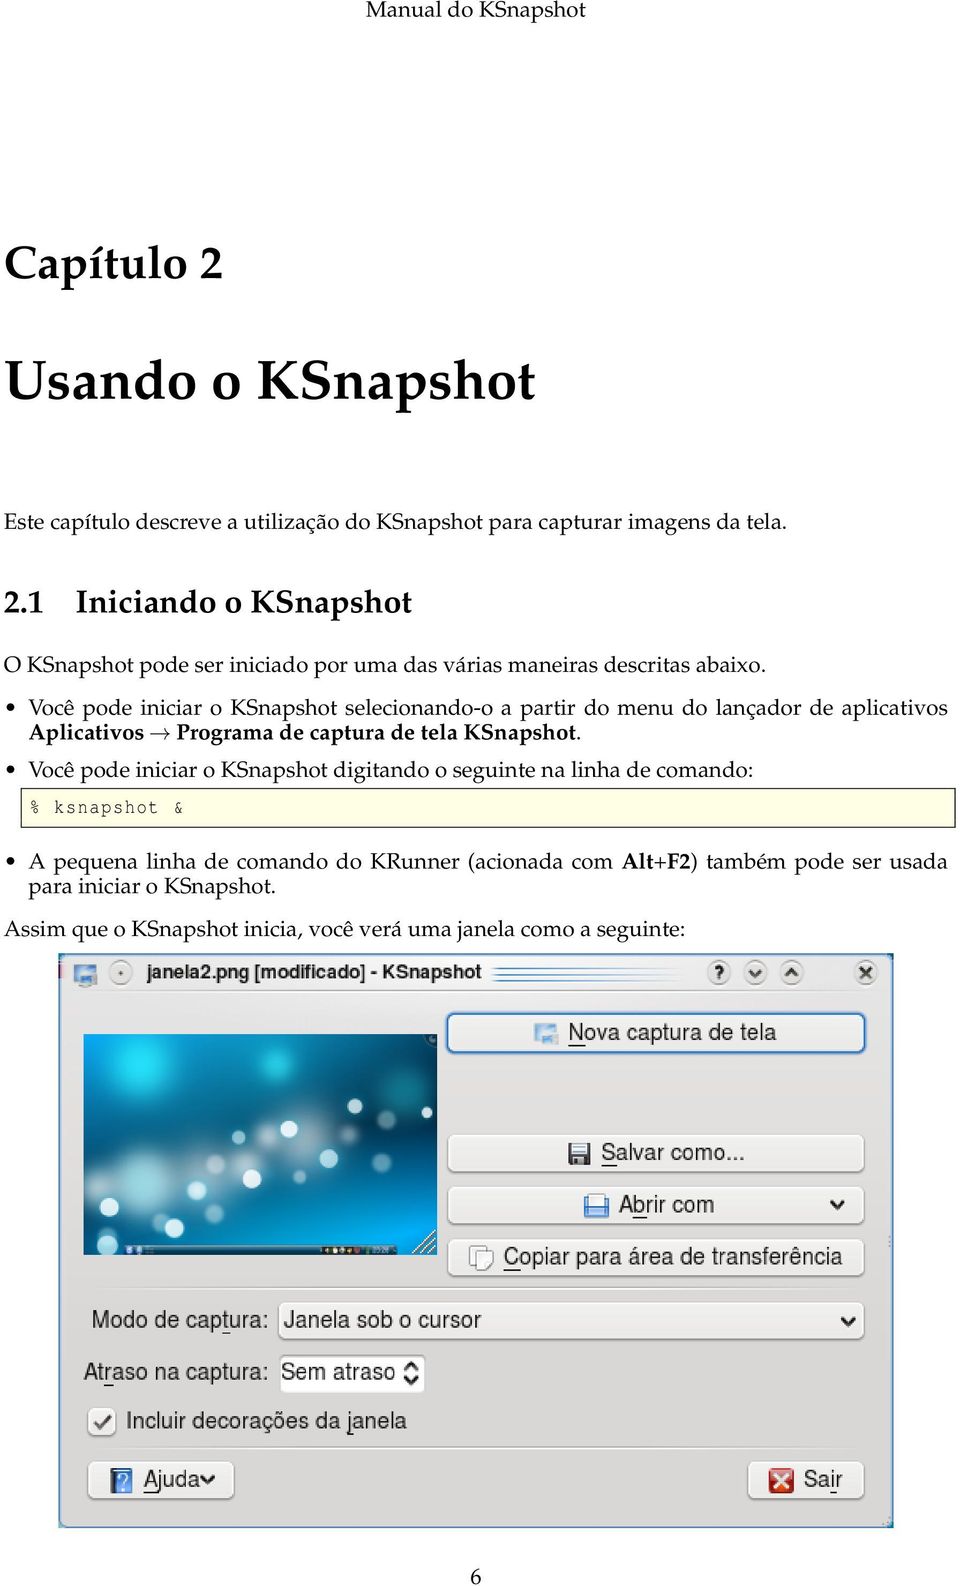 Você pode iniciar o KSnapshot digitando o seguinte na linha de comando: % ksnapshot & A pequena linha de comando do KRunner (acionada com Alt+F2) também